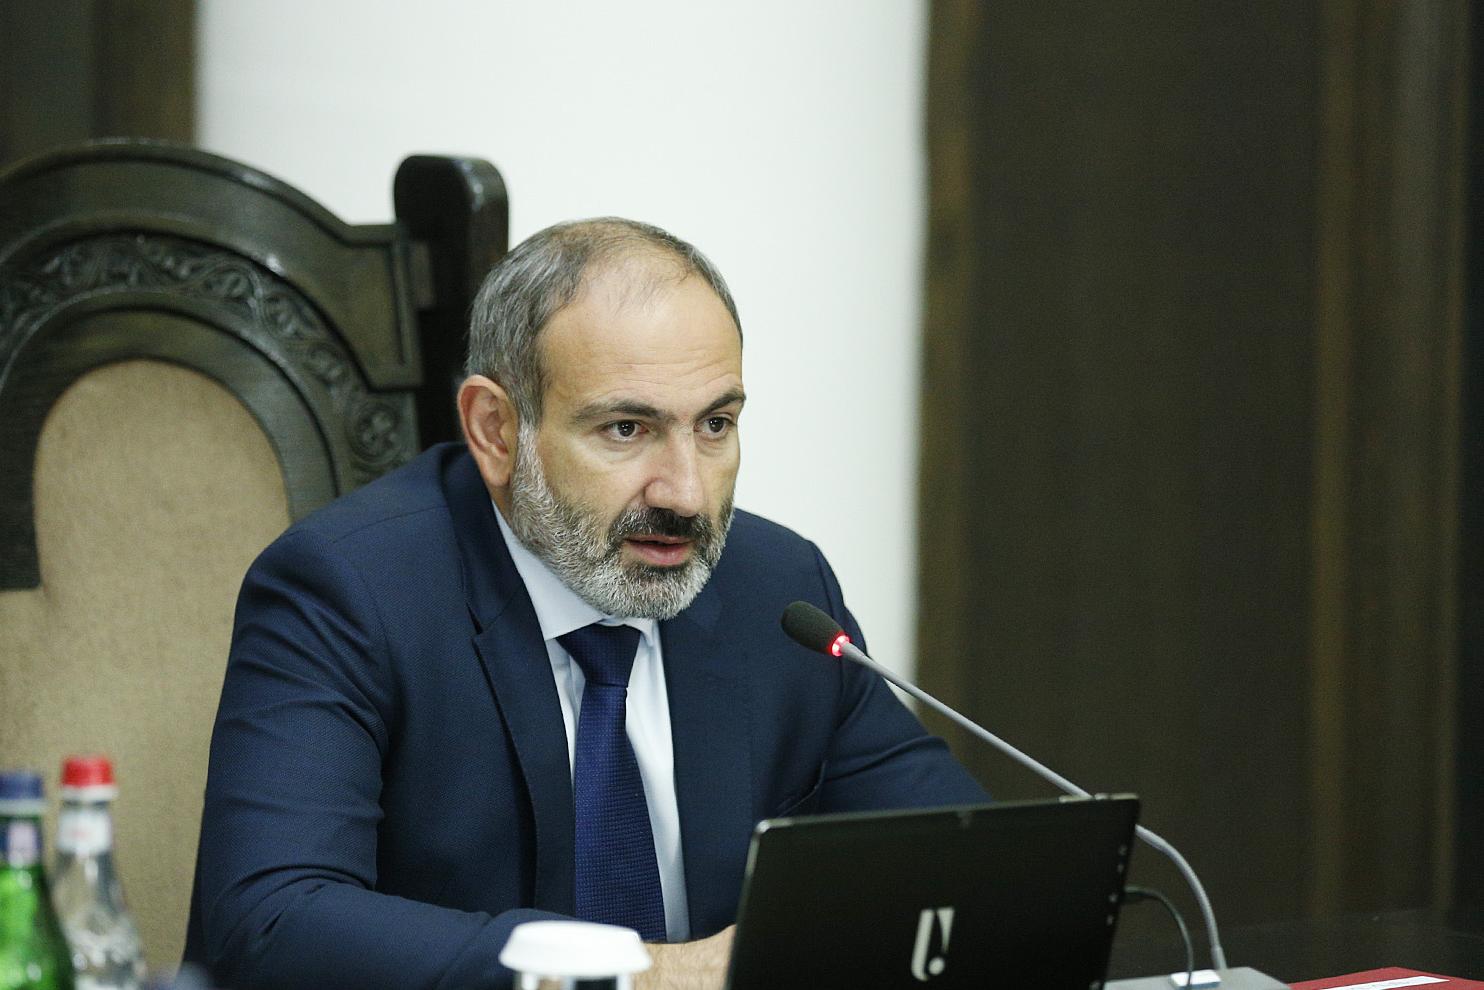 Пашинян: В Армении есть рабочие места, но наша образовательная система не адаптирована к нуждам рынка труда